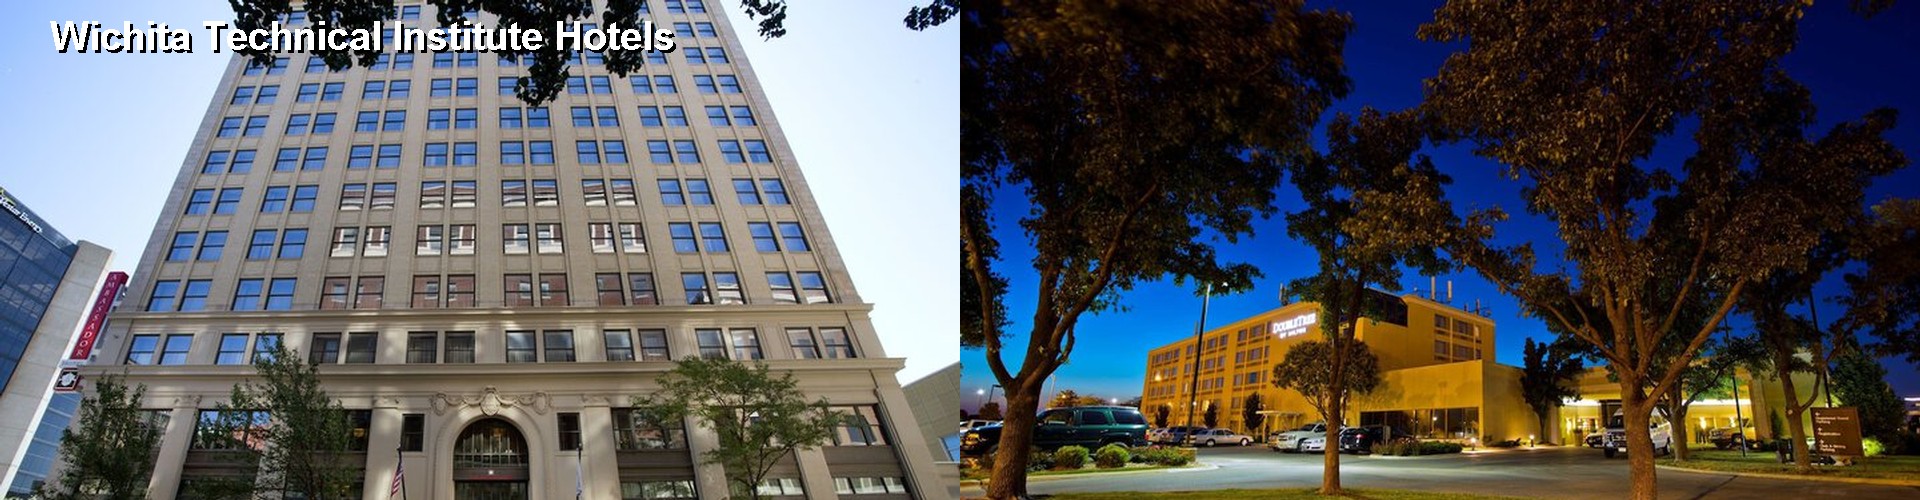 3 Best Hotels near Wichita Technical Institute